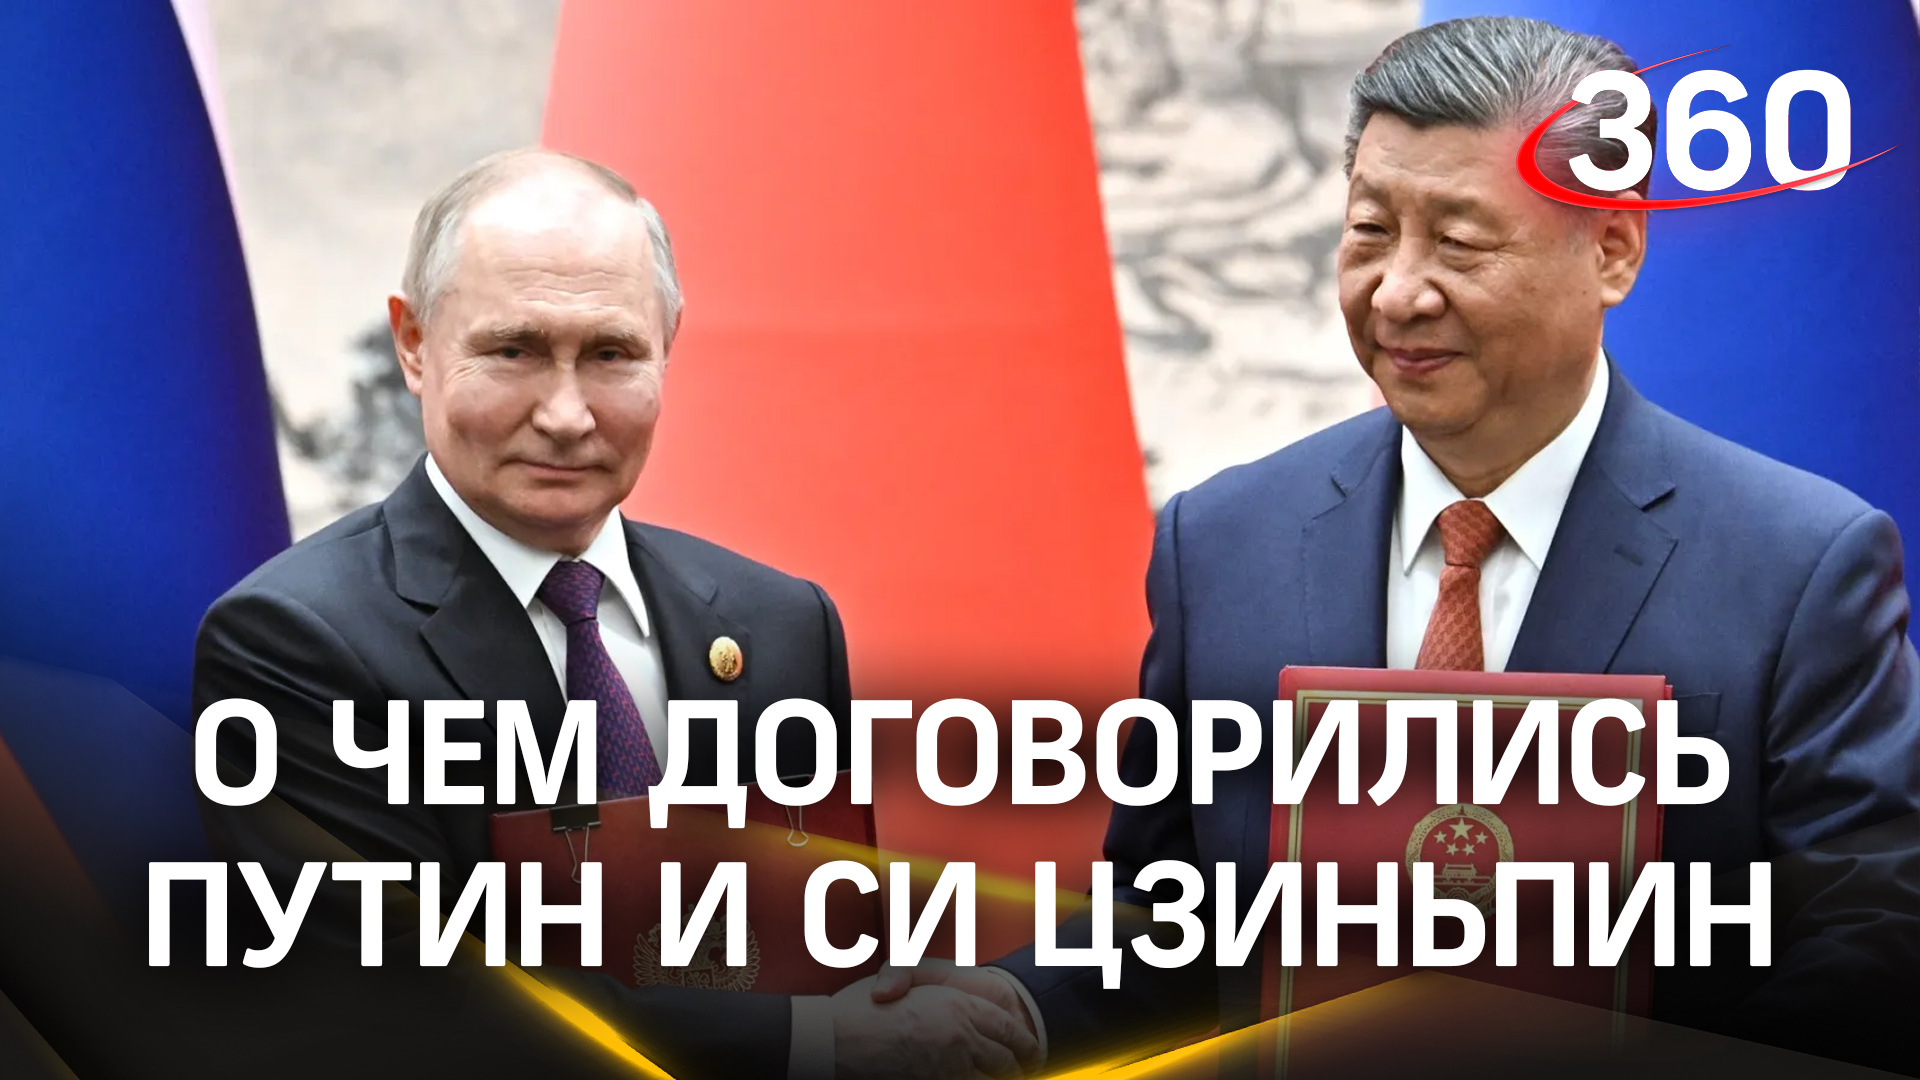 Взаимодействие в энергетике, военной области, торговле – о чём договорились Путин и Си Цзиньпин